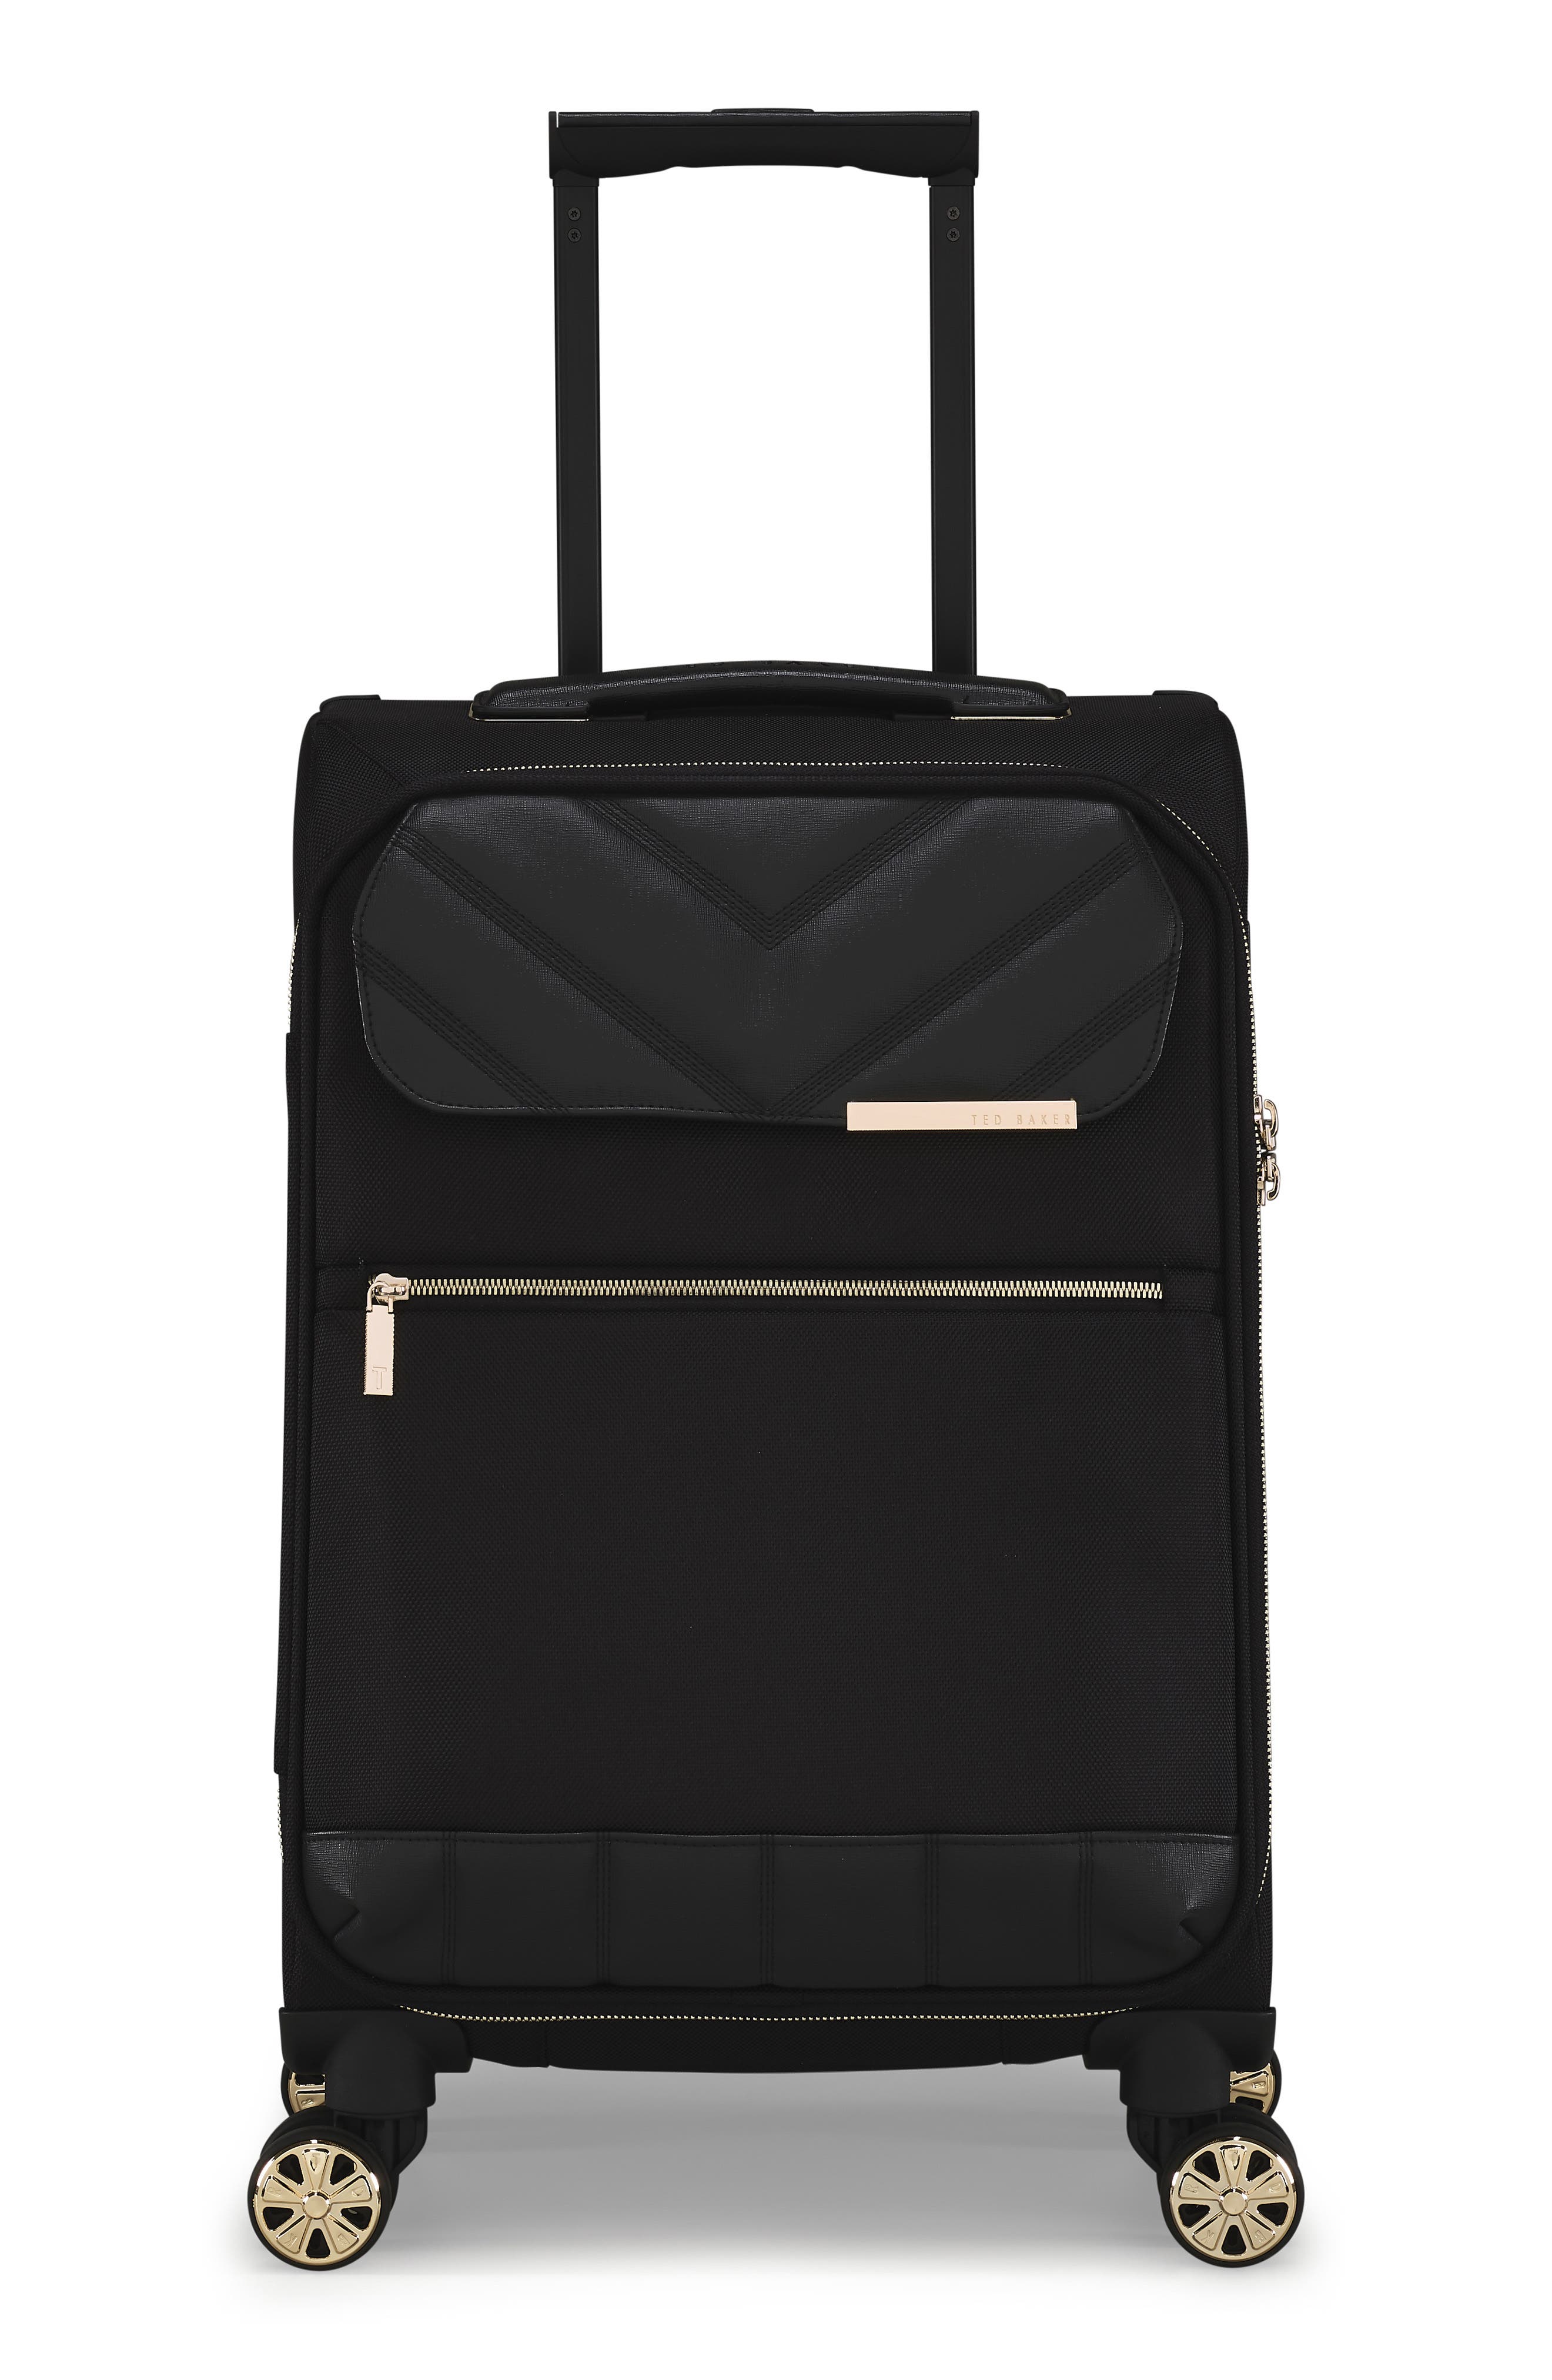 新発売の Ted Baker Albany Lightweight Black) Fashion Softside Luggage Suitcase  (Vanity Case, Eco Spinner バス用品